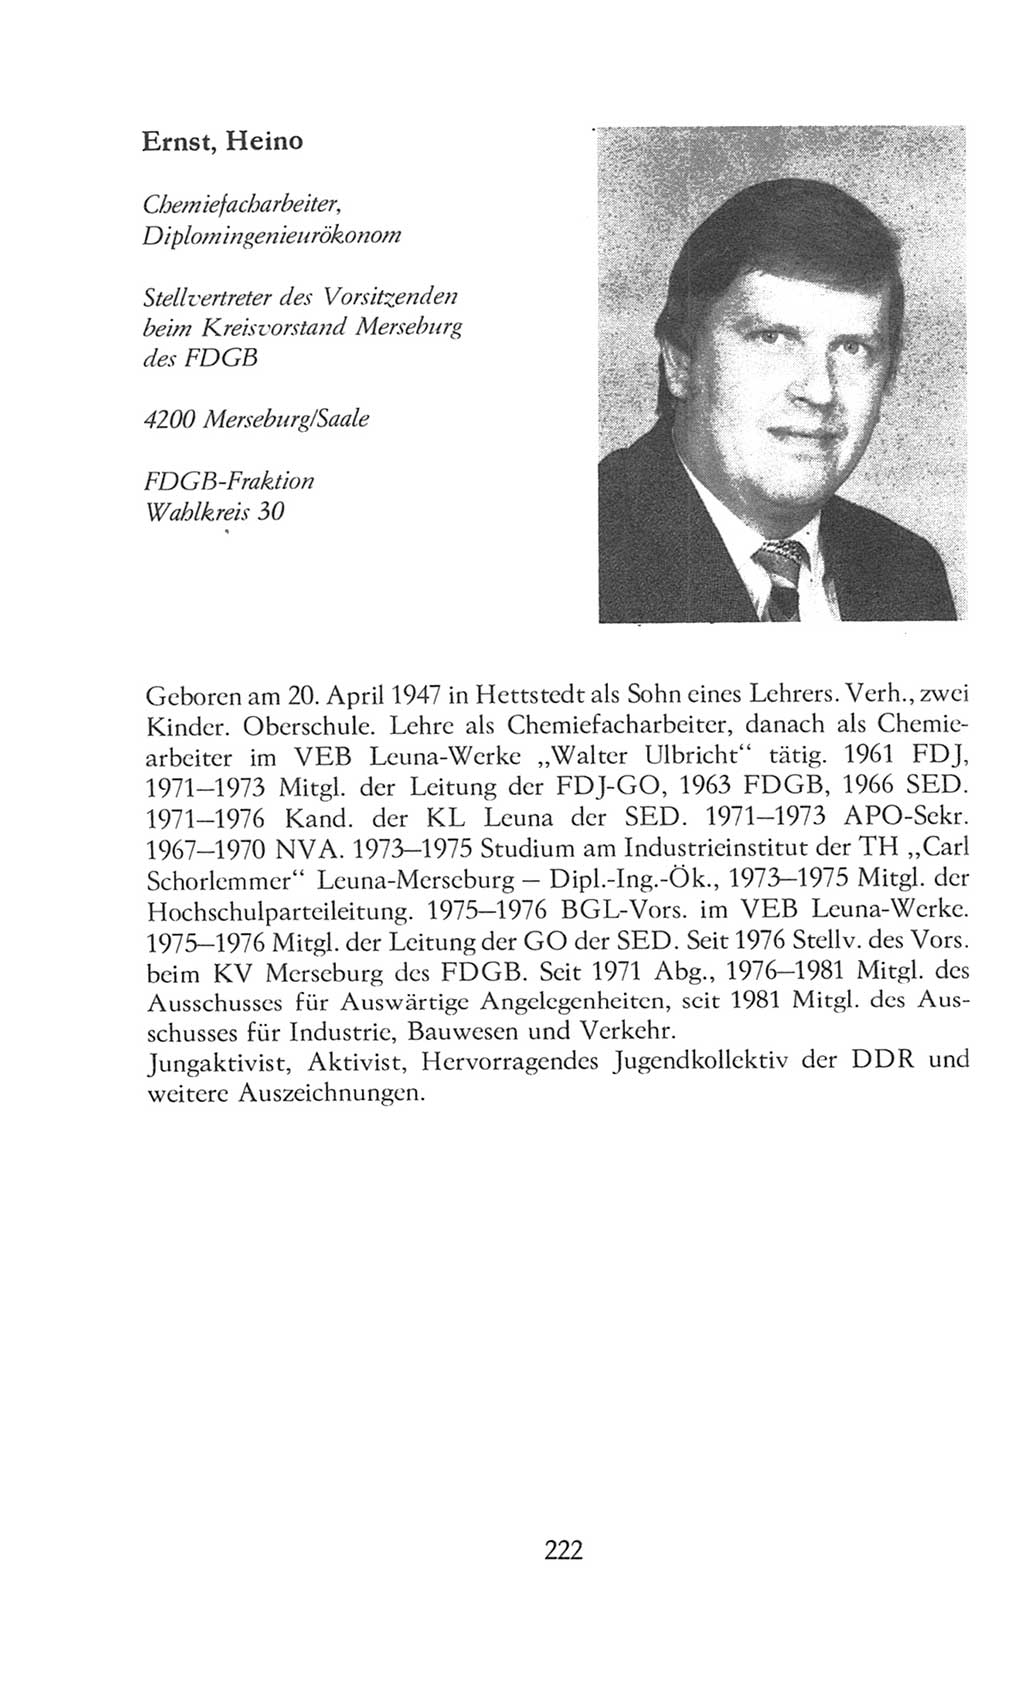 Volkskammer (VK) der Deutschen Demokratischen Republik (DDR), 8. Wahlperiode 1981-1986, Seite 222 (VK. DDR 8. WP. 1981-1986, S. 222)